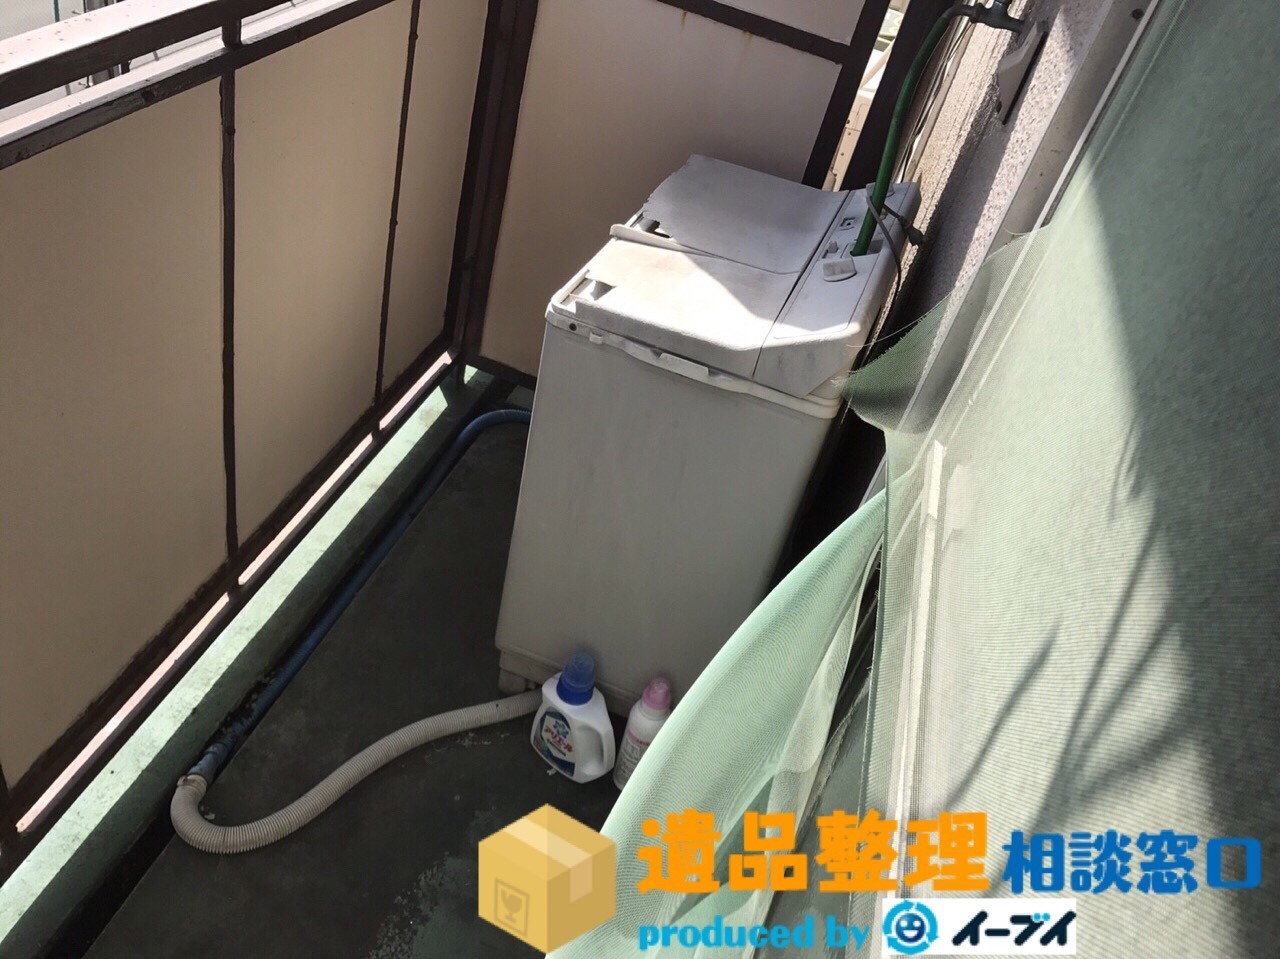 大阪府茨木市で遺品整理後にベランダの洗濯機や室外機の処分をしました。のアイキャッチ